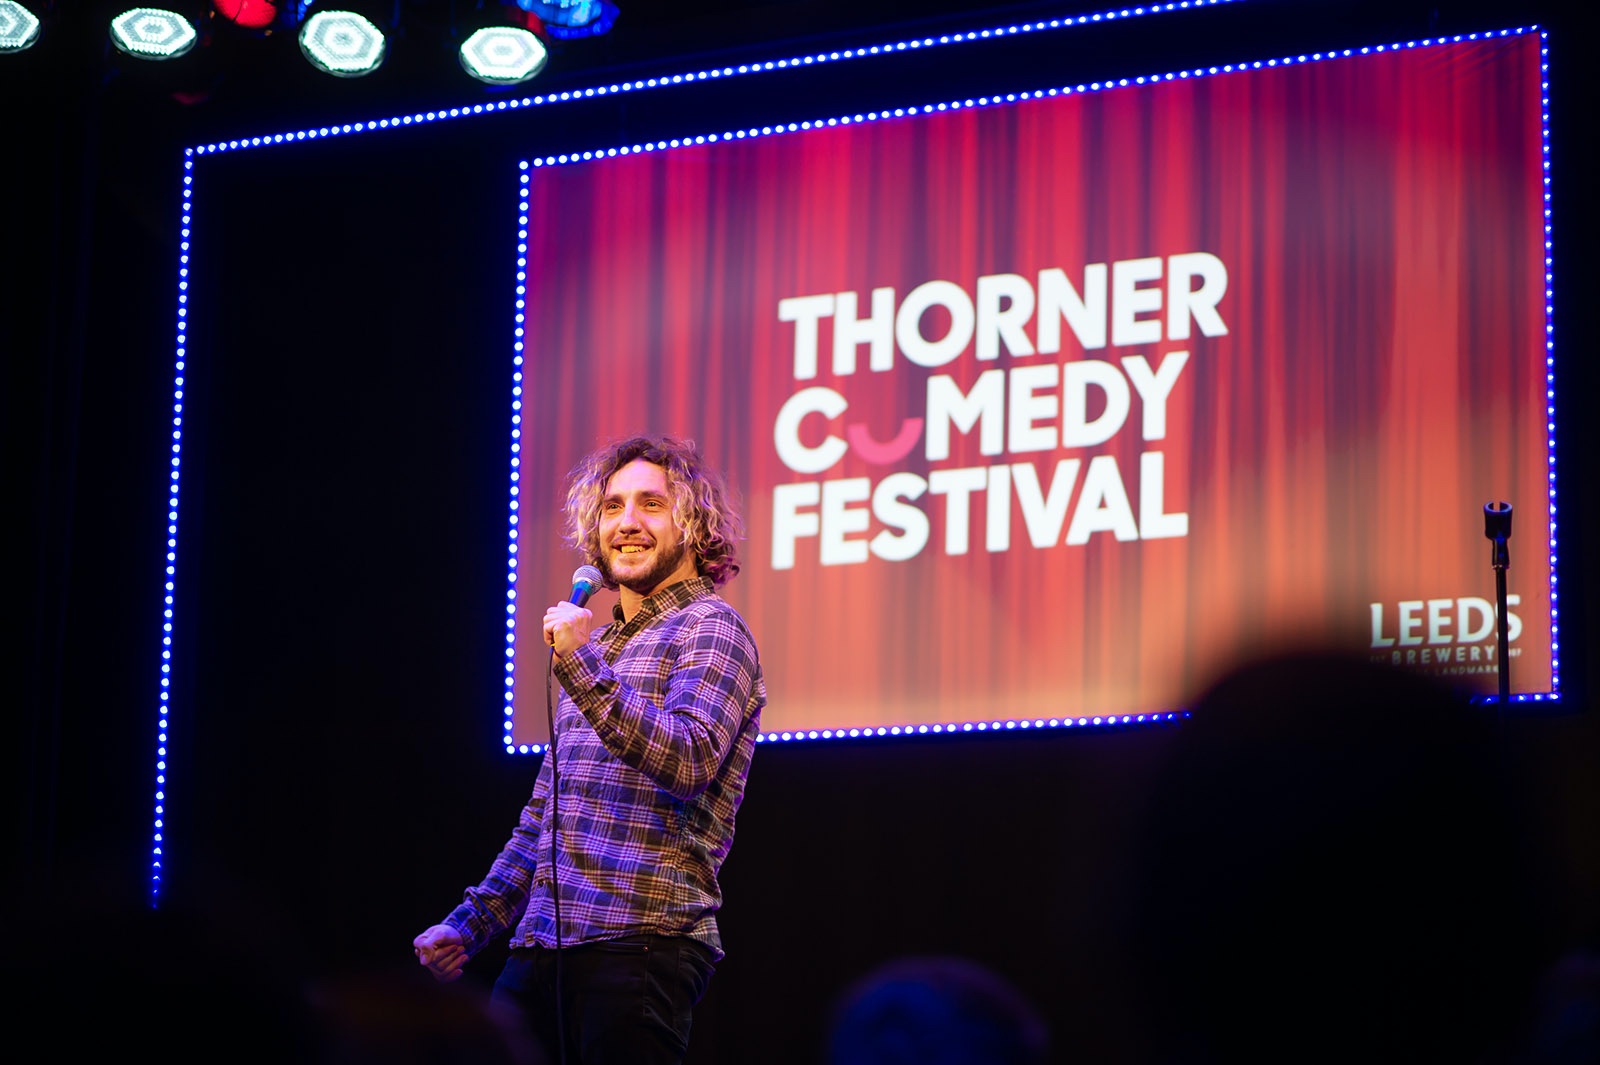 thorner comedy festival branding design by Leeds based Freelance Designer Neil Holroyd